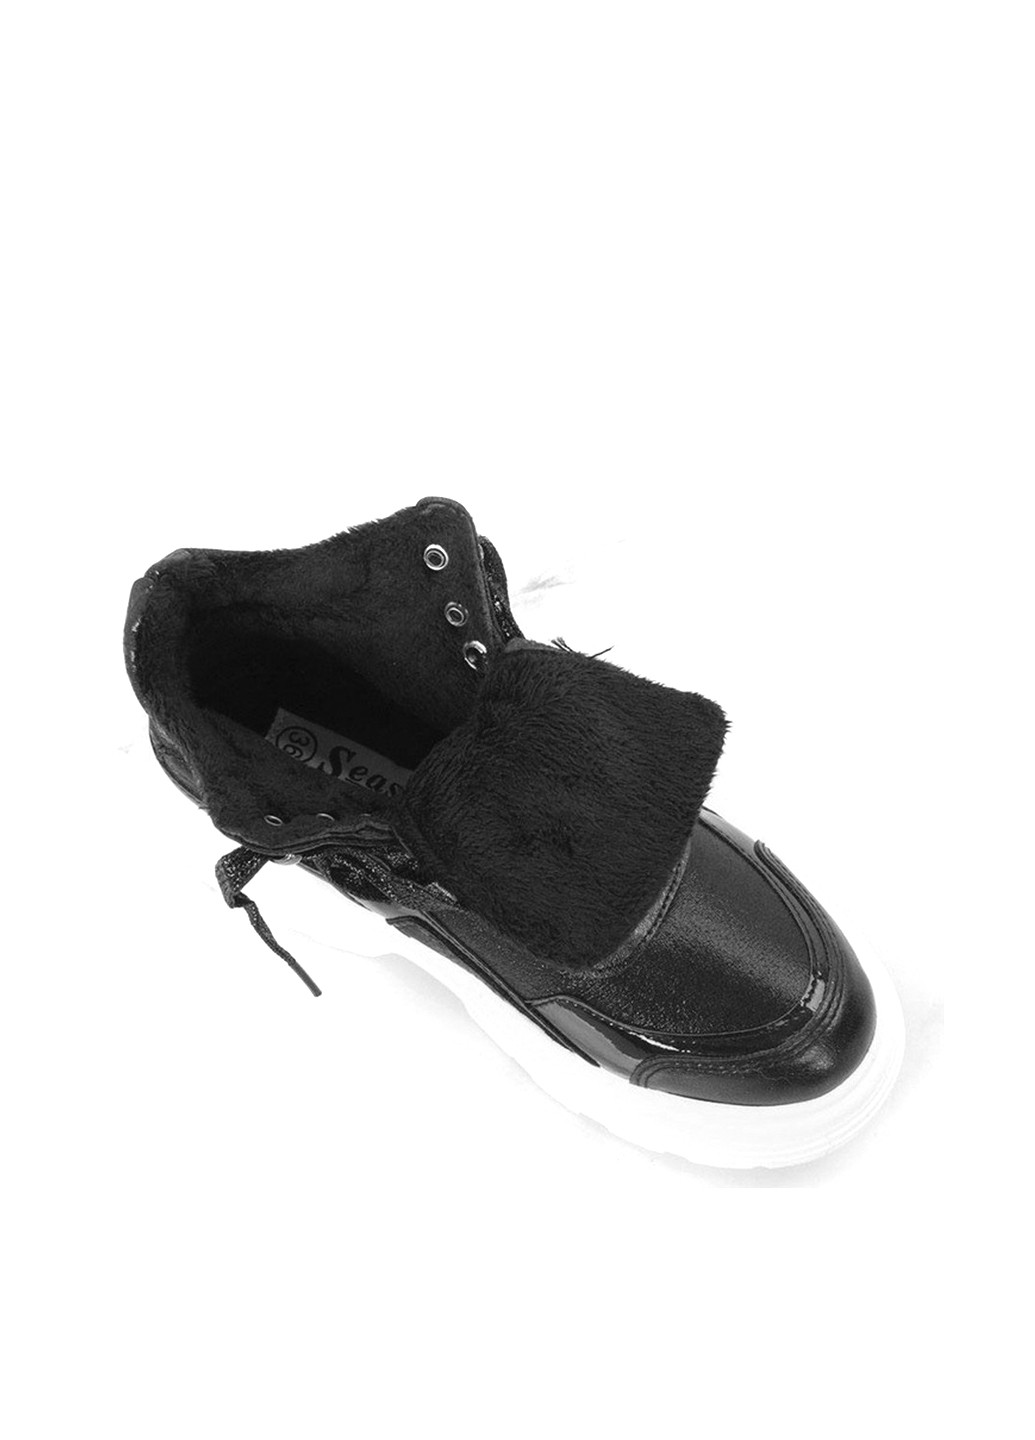 Осенние ботинки Lucky Shoes с белой подошвой из искусственной кожи